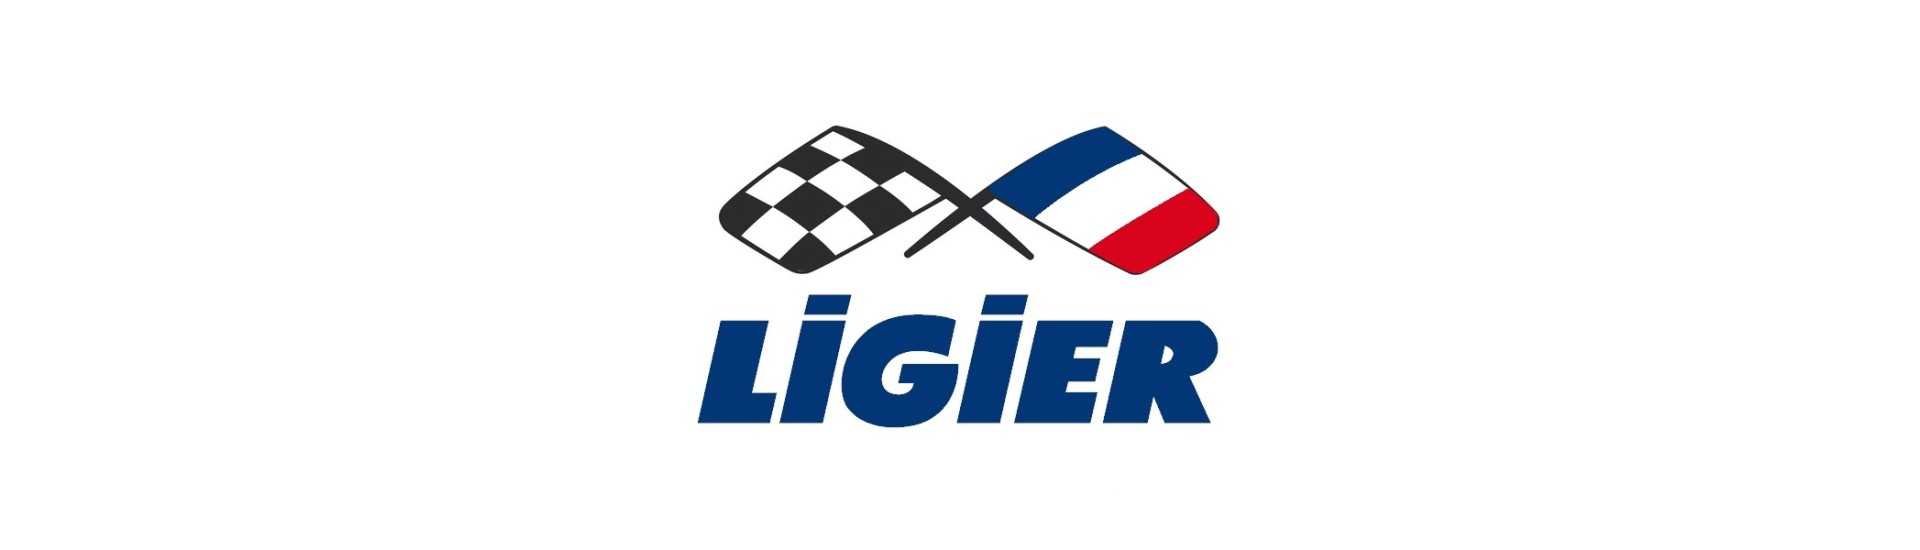 Pédale d'accélérateur au meilleur prix pour voiture sans permis Ligier